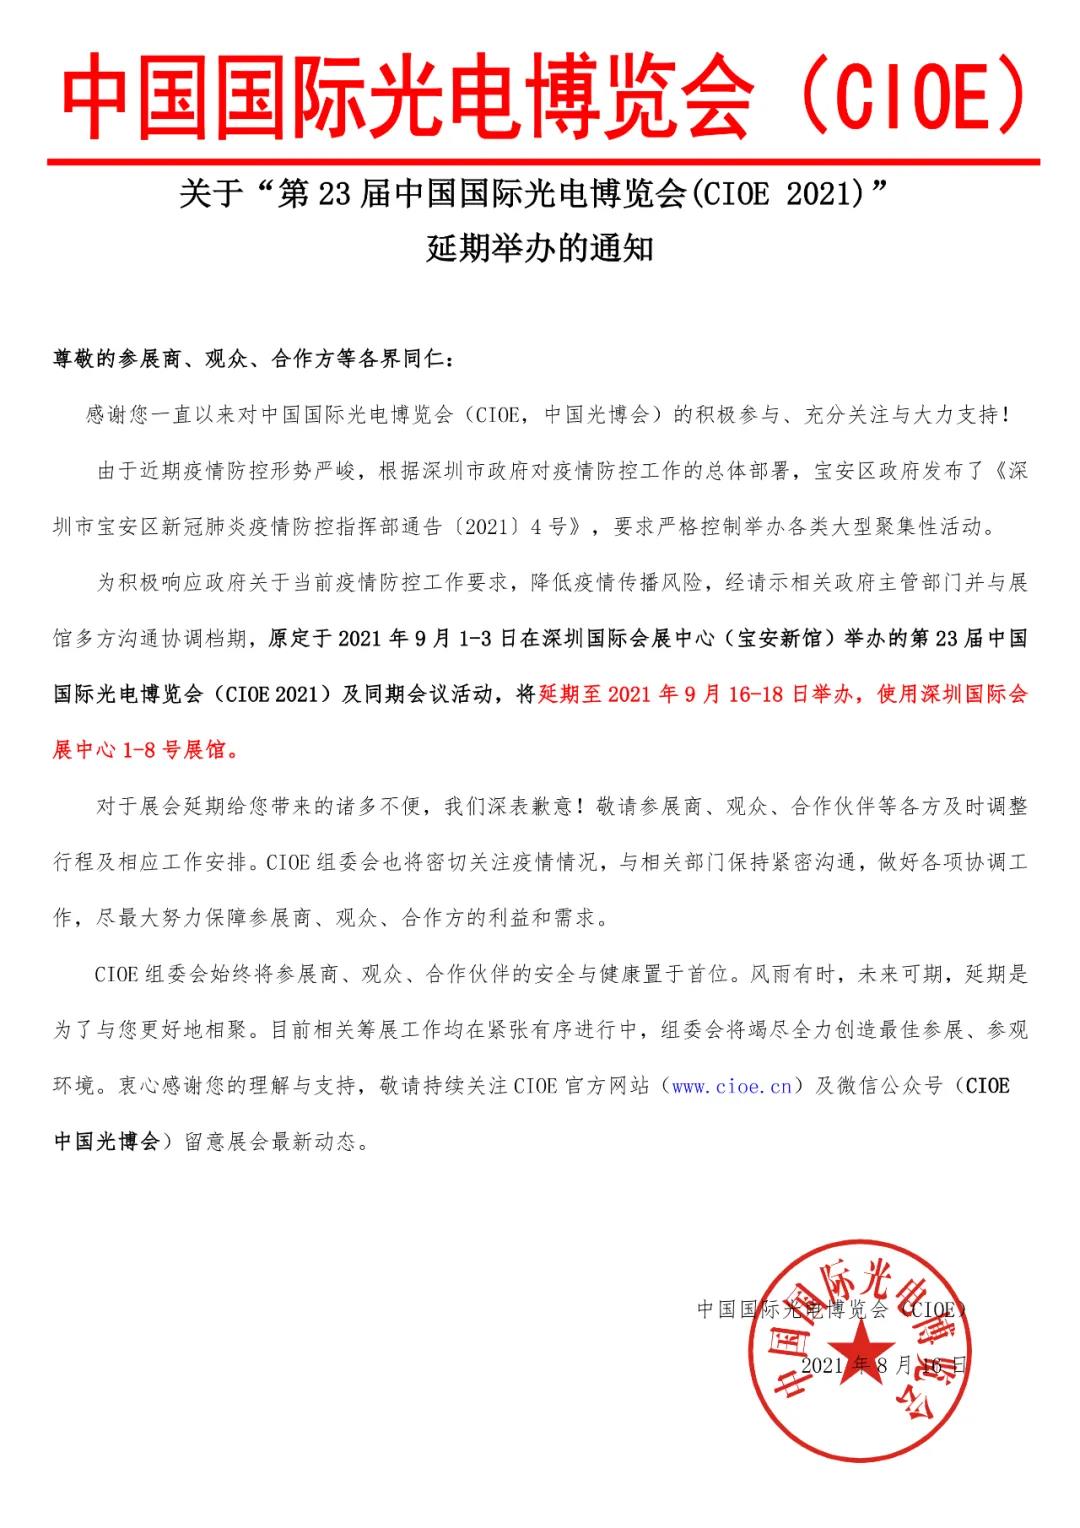 【延期通知】关于“第23届中国国际光电博览会(CIOE 2021)”延期举办的通知